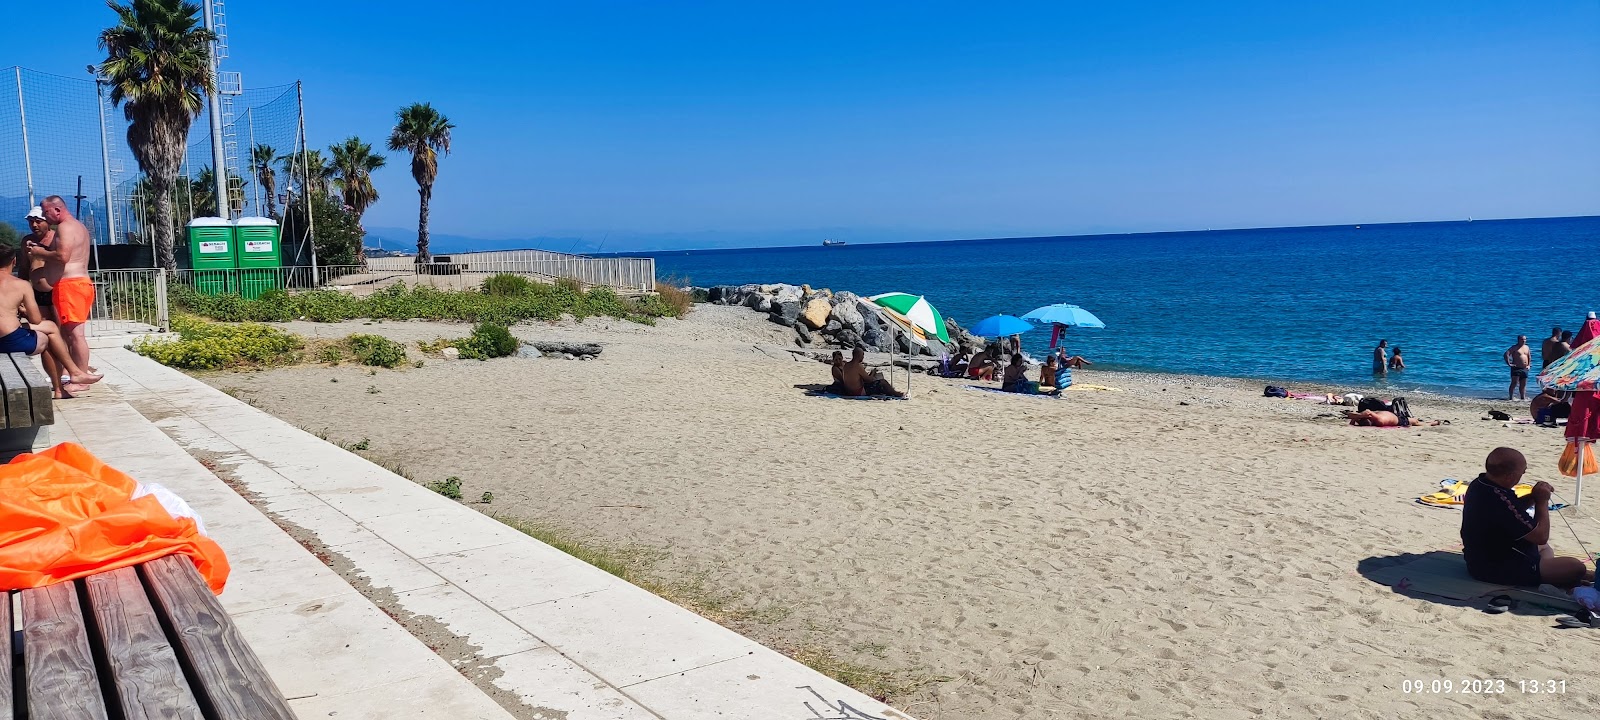 Foto af Spiaggia di Zinola med høj niveau af renlighed